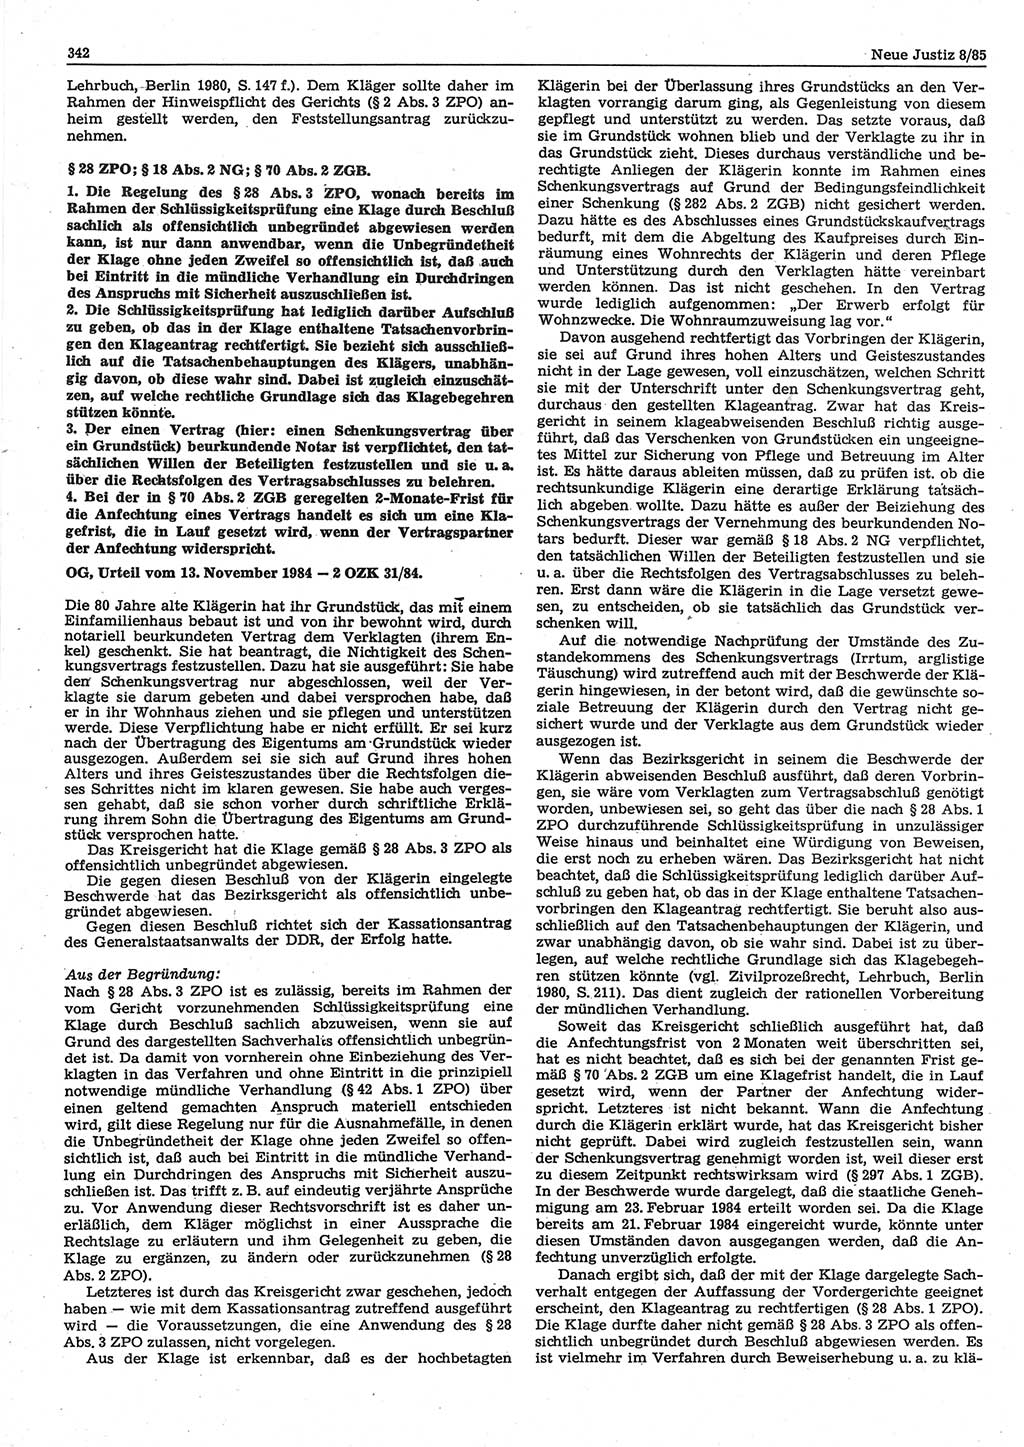 Neue Justiz (NJ), Zeitschrift für sozialistisches Recht und Gesetzlichkeit [Deutsche Demokratische Republik (DDR)], 39. Jahrgang 1985, Seite 342 (NJ DDR 1985, S. 342)